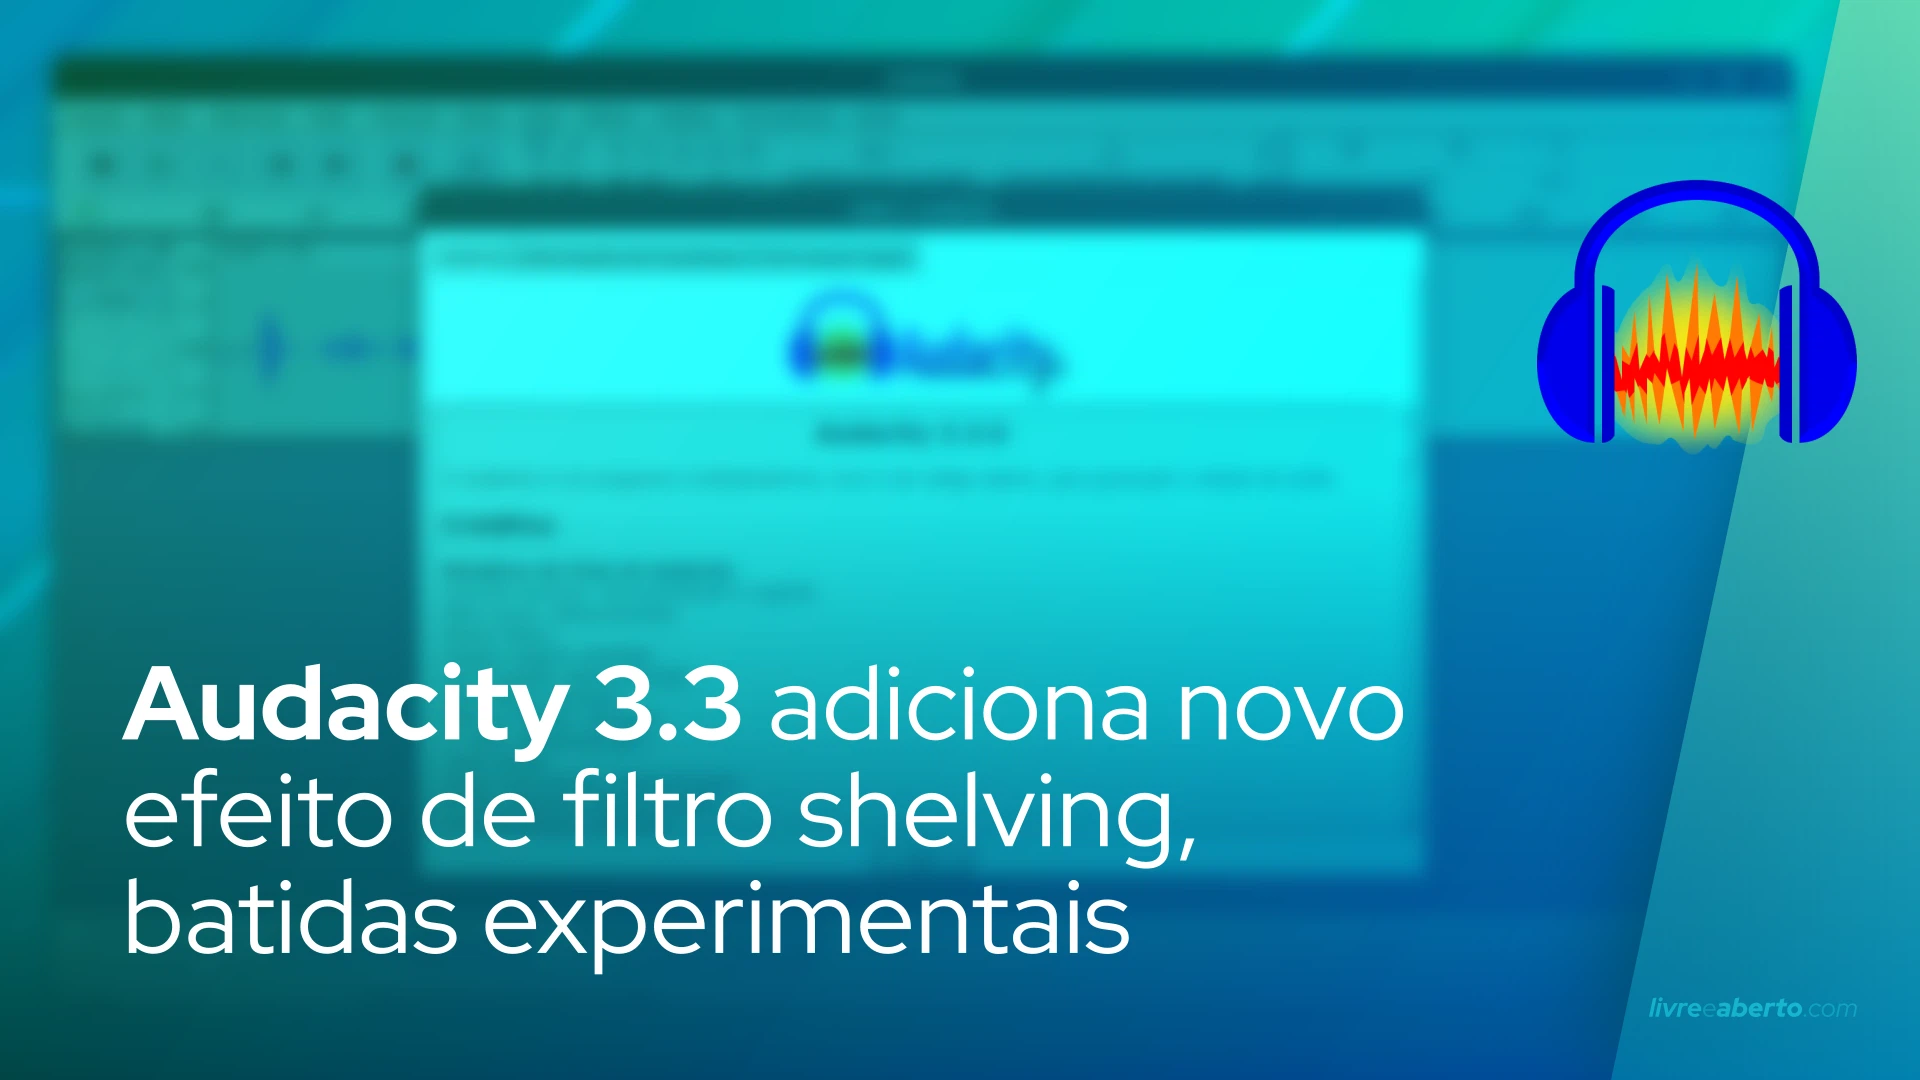 Audacity 3.3 adiciona novo efeito de filtro shelving, batidas experimentais